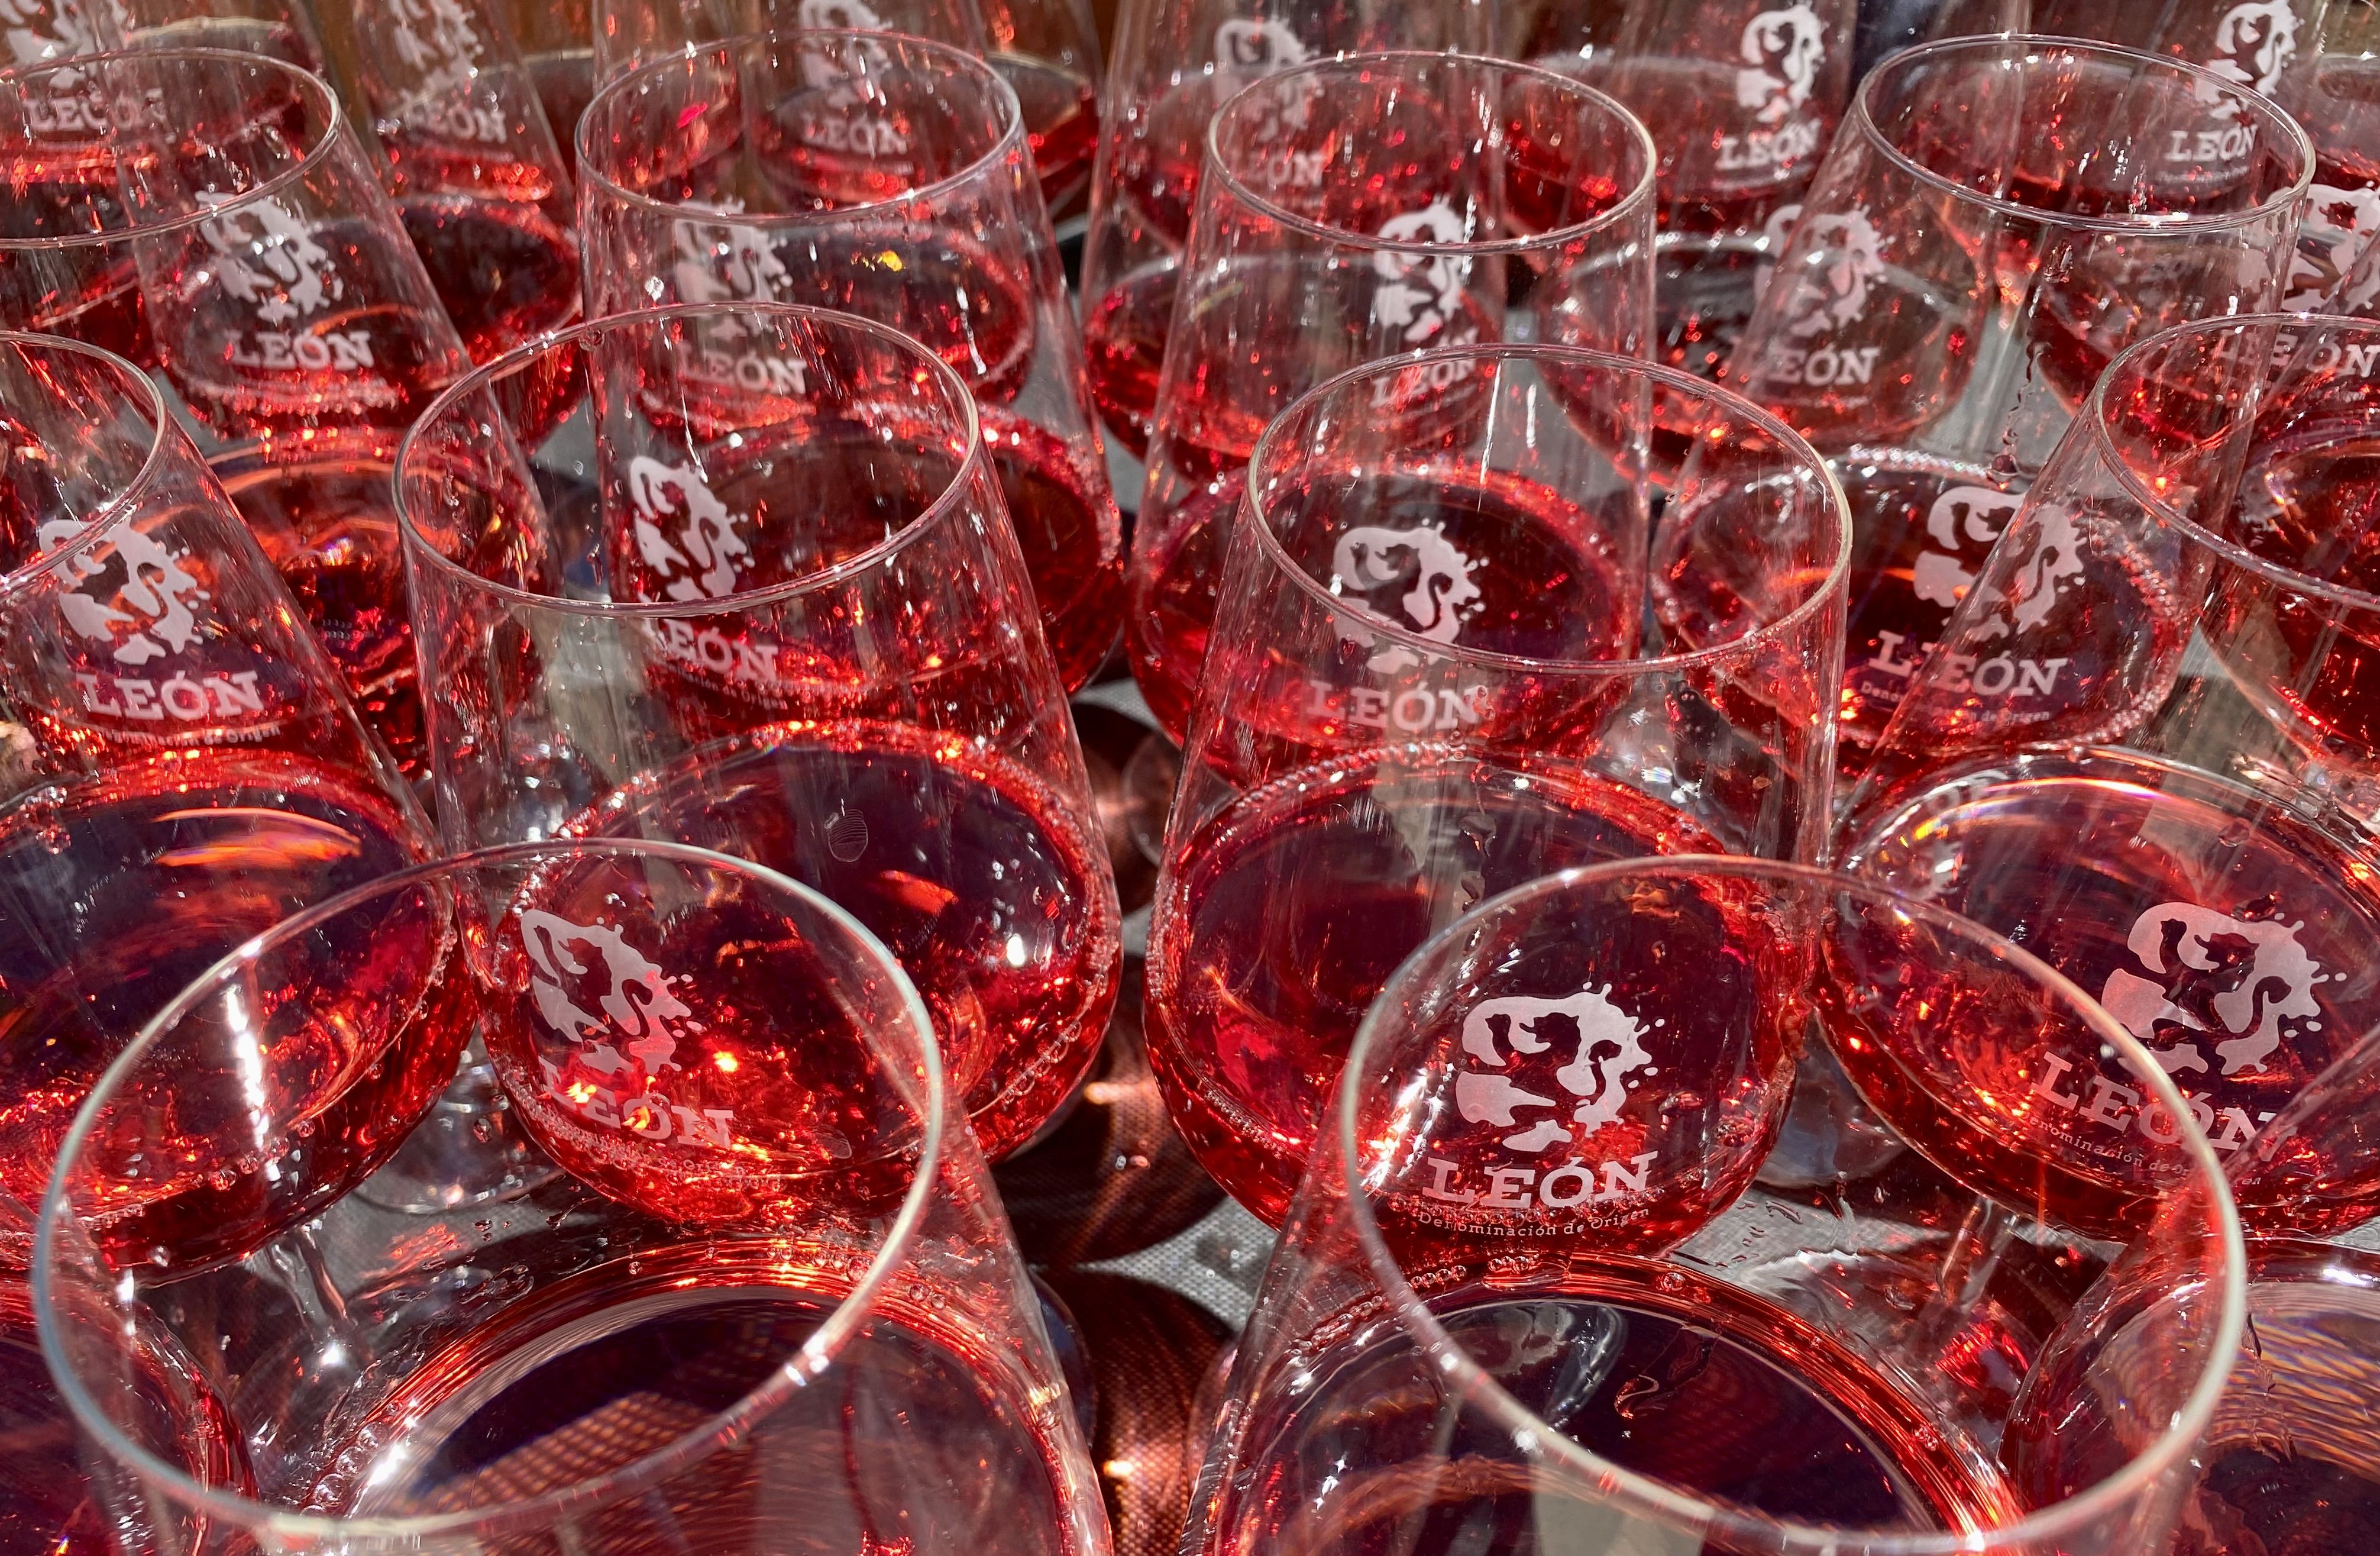 Copas de vino rosado de la DO León. | L.N.C.